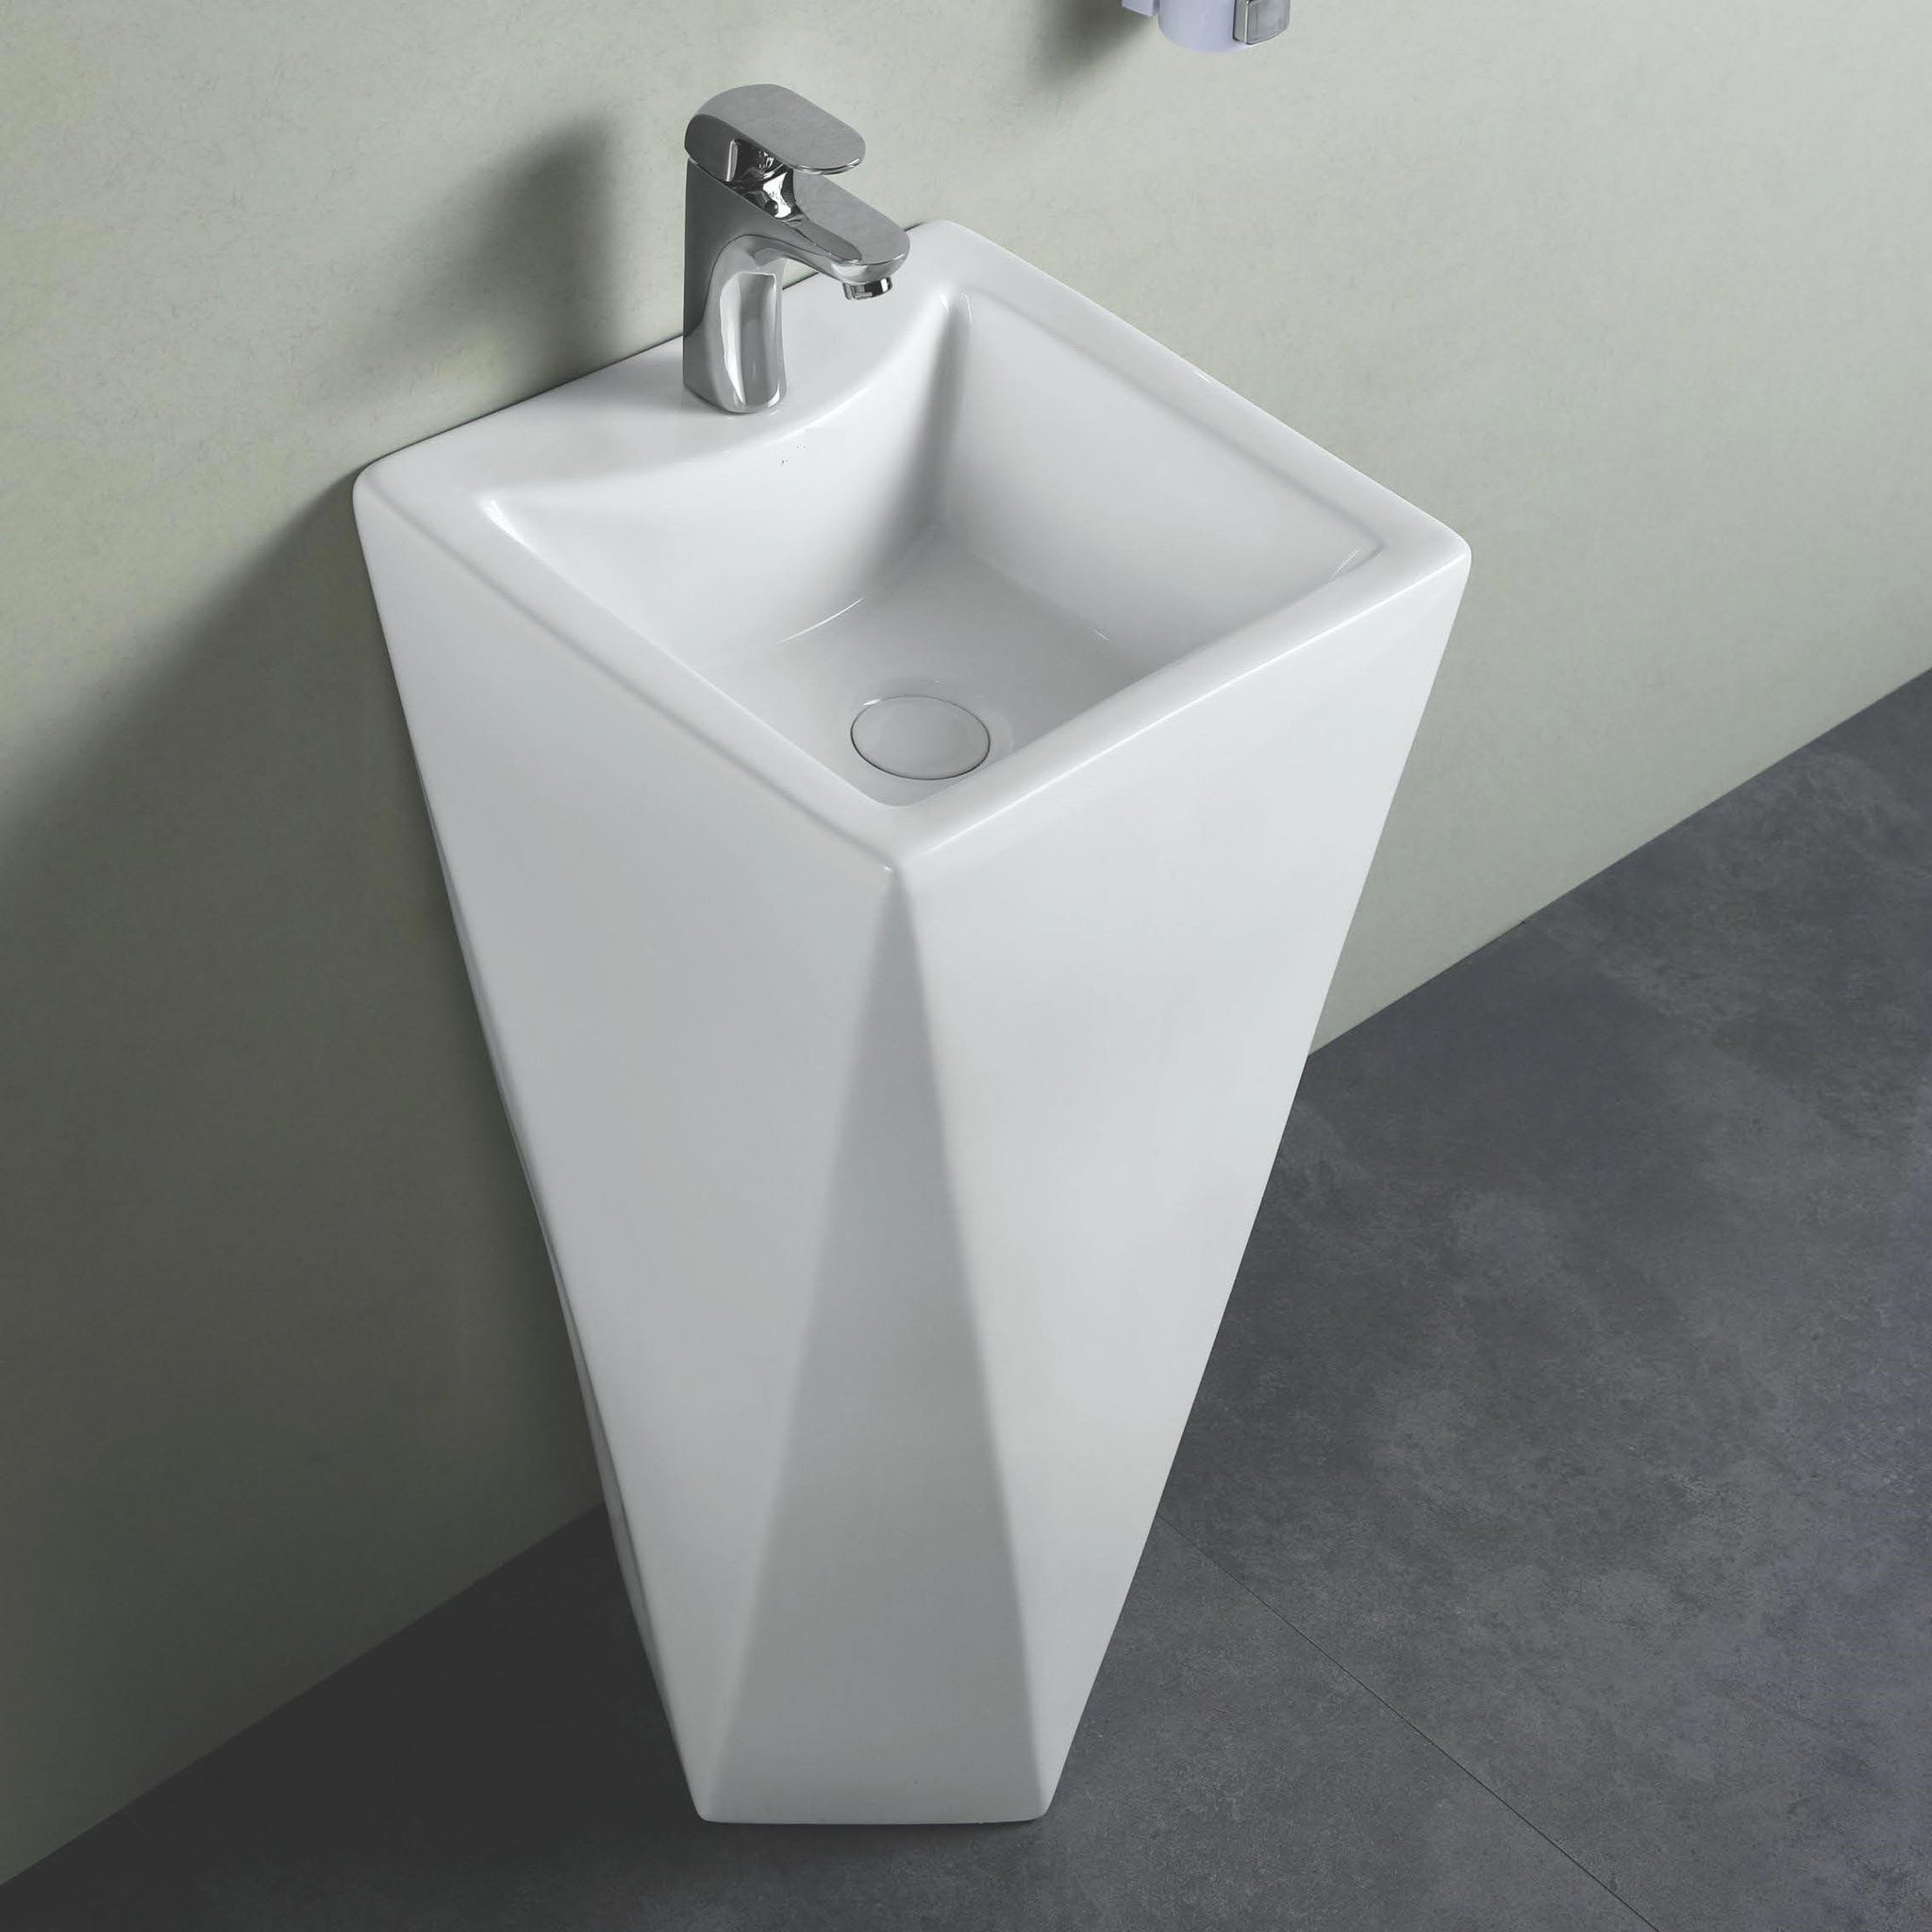 Pedestal Wash Basins by inart